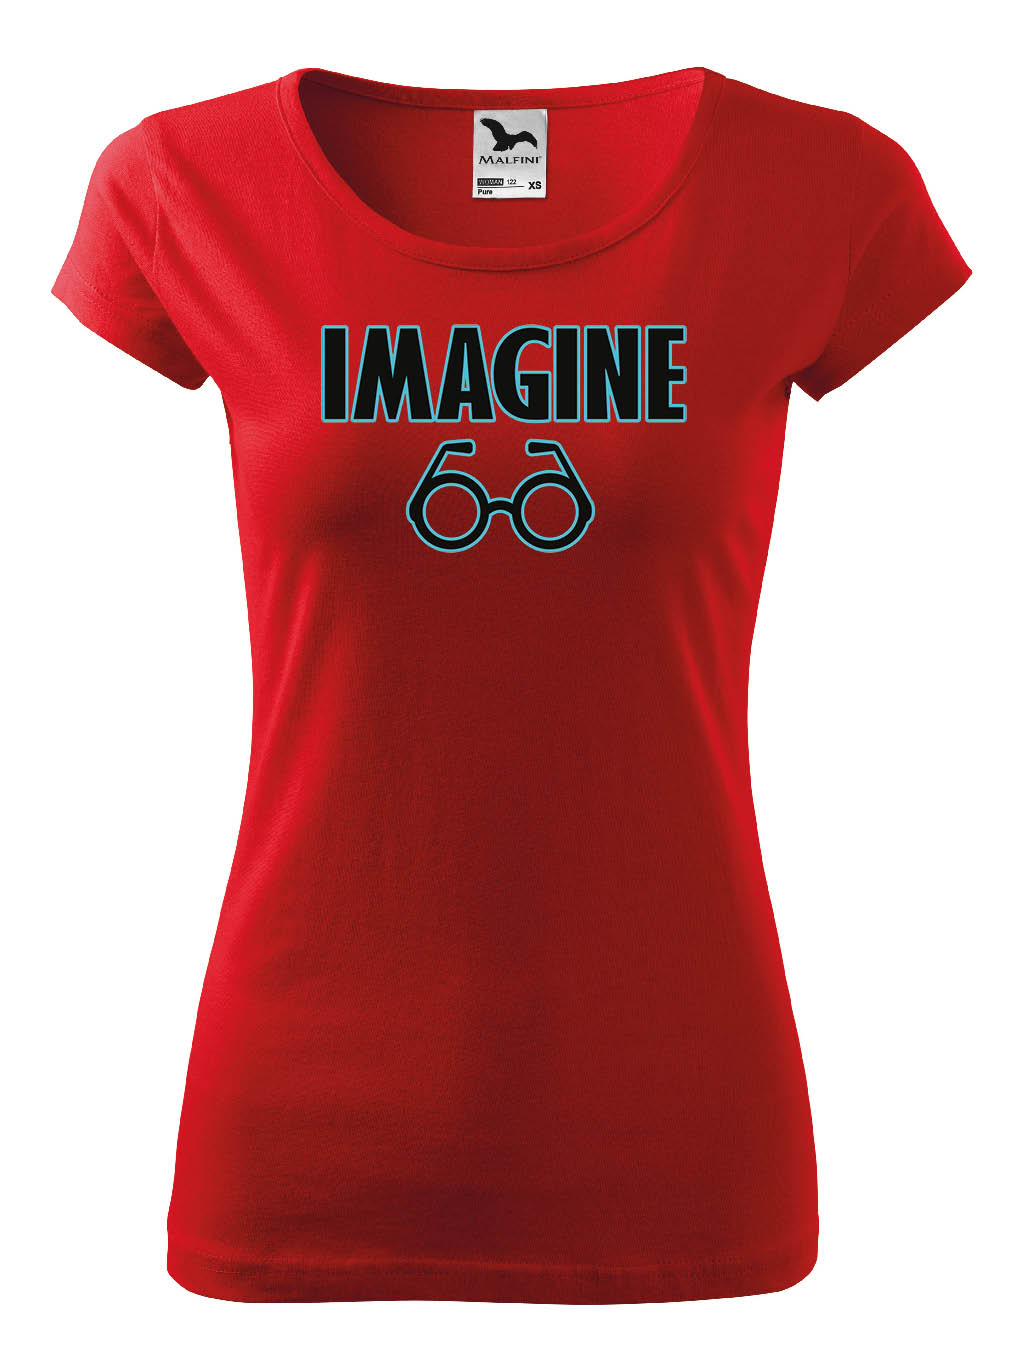 Praďoch Tričko s potiskem Imagine Pohlaví: Dámské tričko, Barva textilu: Červená